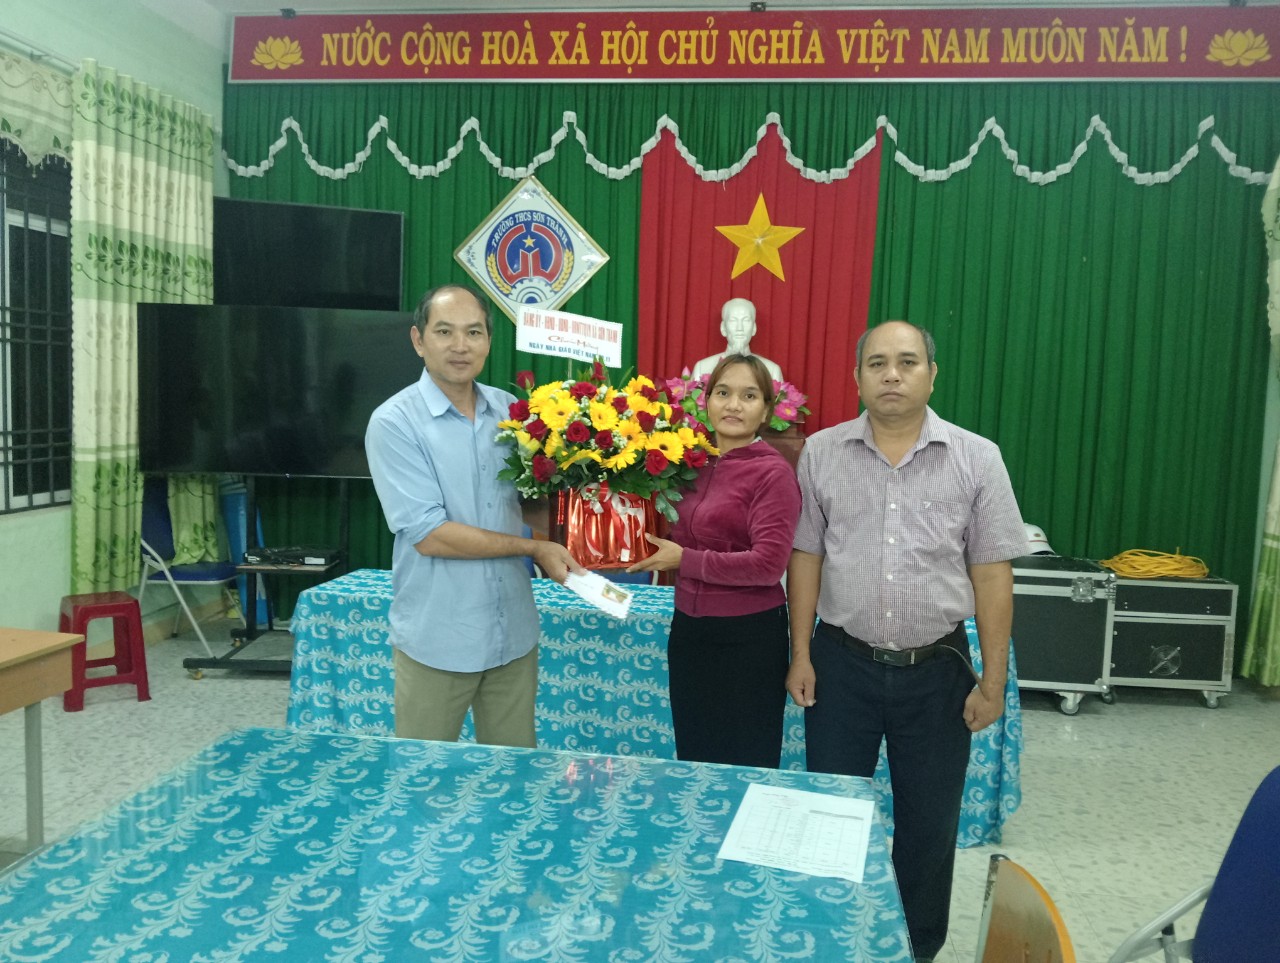 Đồng chí Đinh Công Ôn, PCT UBND xã (bên trái) và đồng chí Đinh Thị Thinh (bên trái, hàng 2), PCT UBND xã thăm tại Trường THCS Sơn Thành